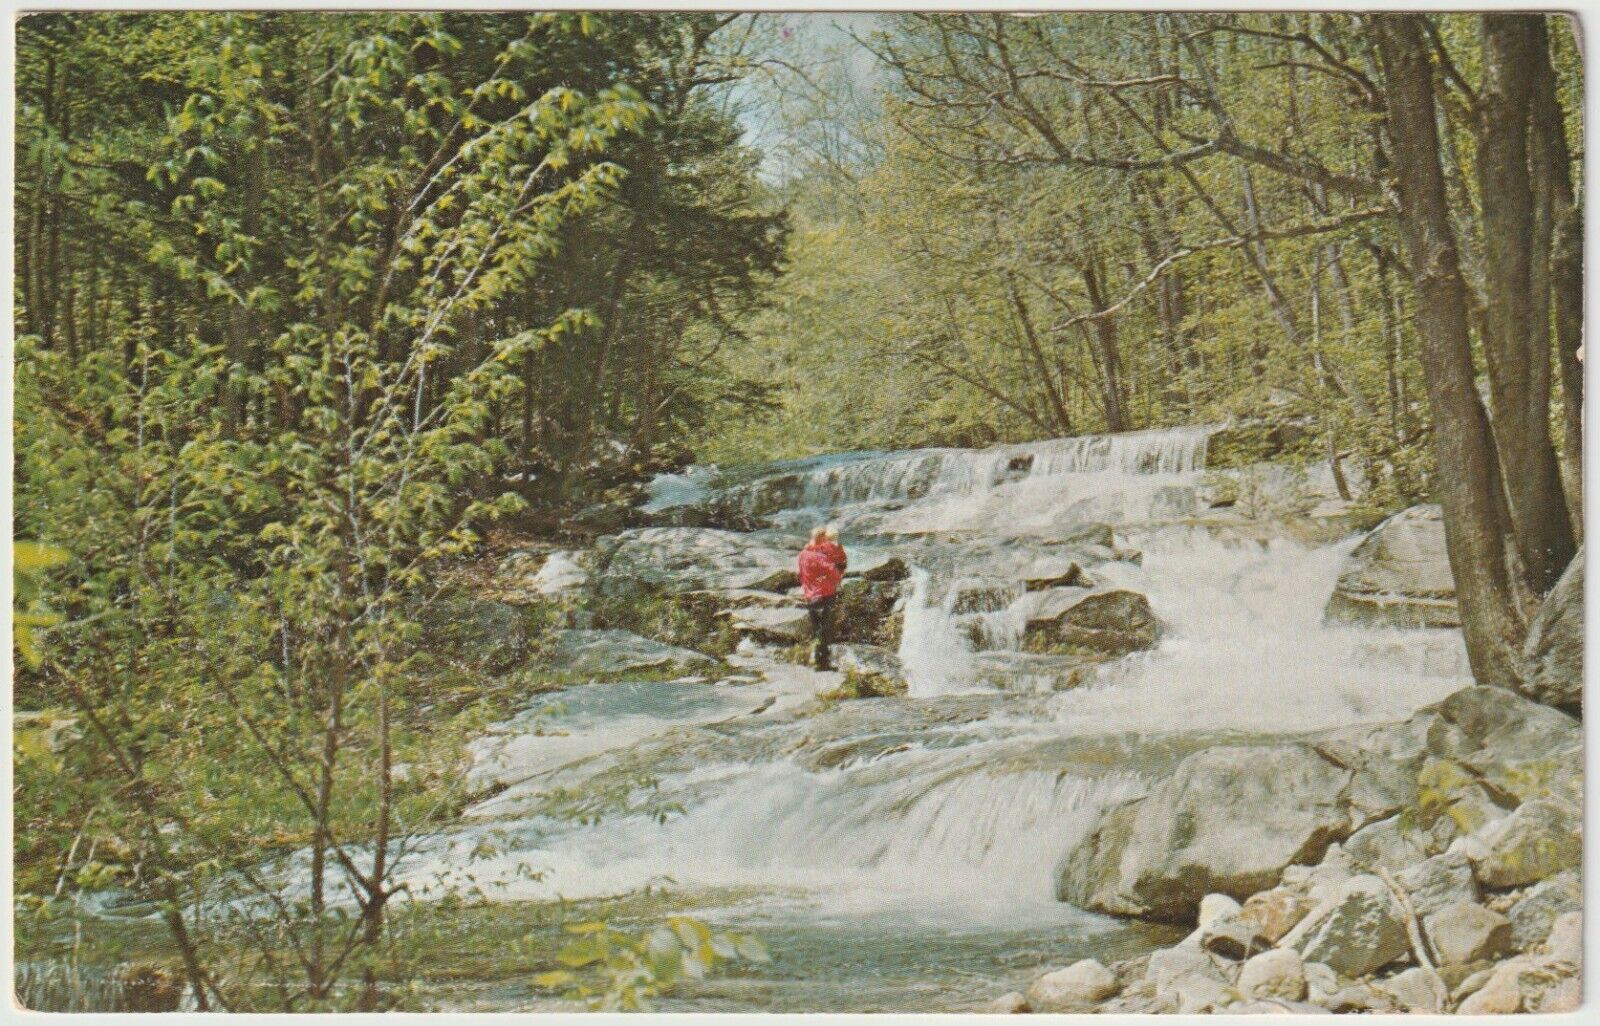 River, West Dummerston, Brattleboro, Vermont - Vintage Postcard